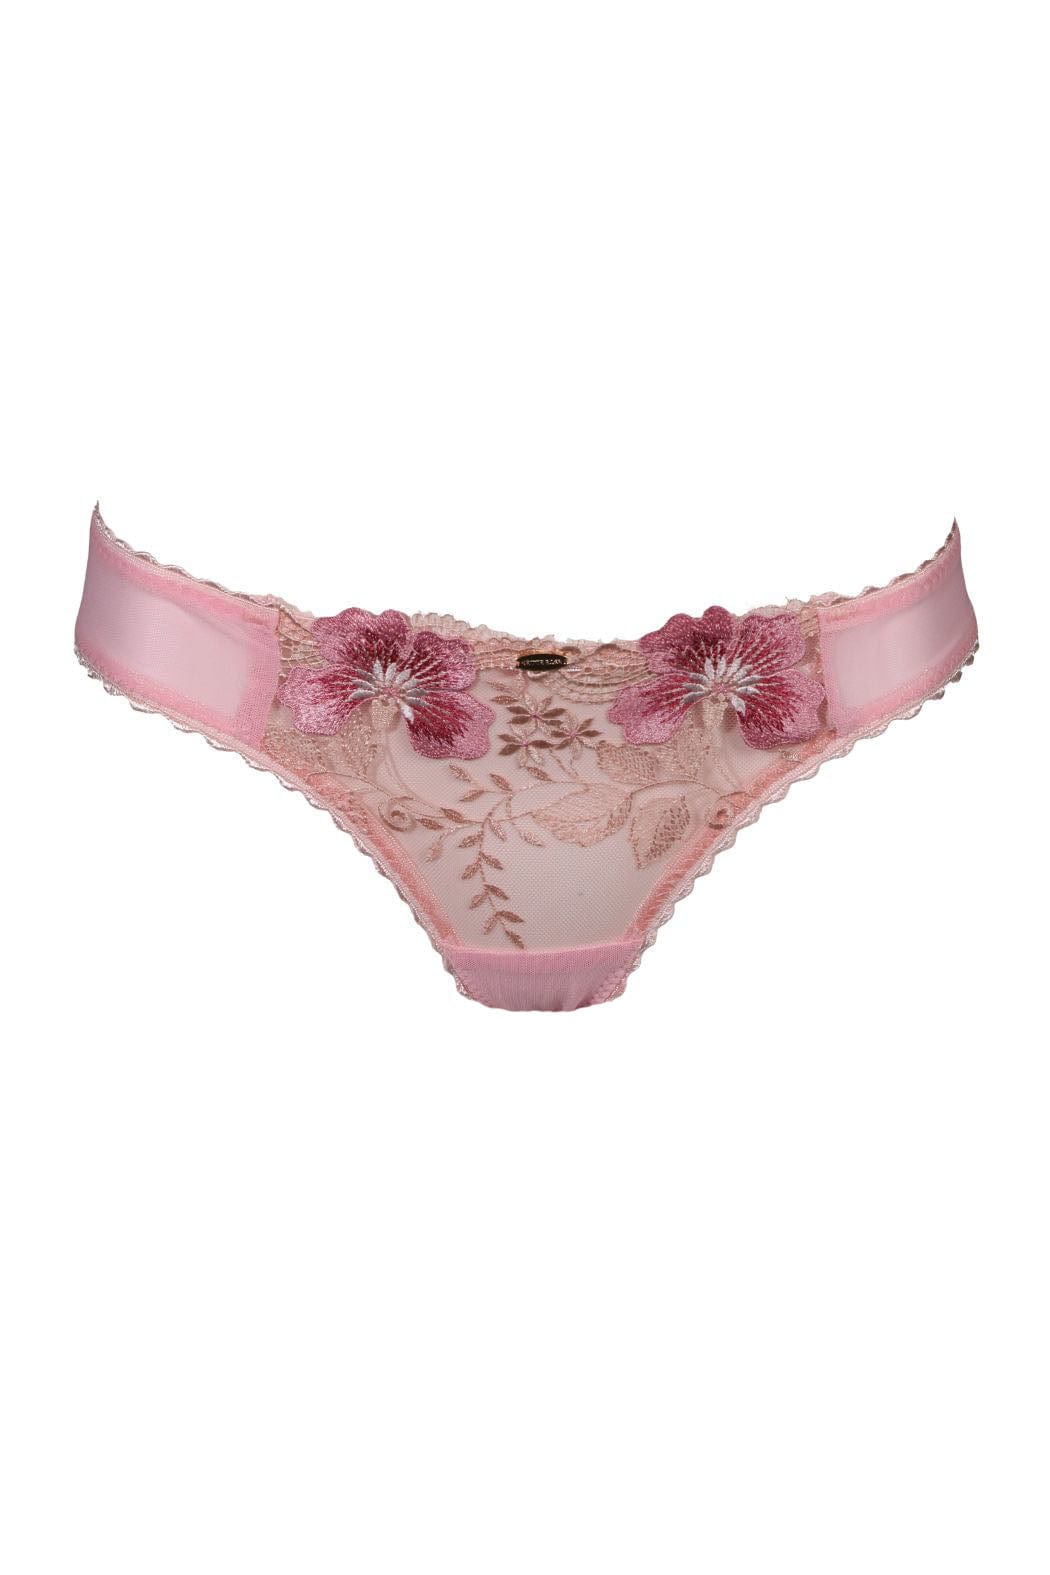 Bamboo High Cut Thong - Pink  Bamboo Underwear - Nette Rose